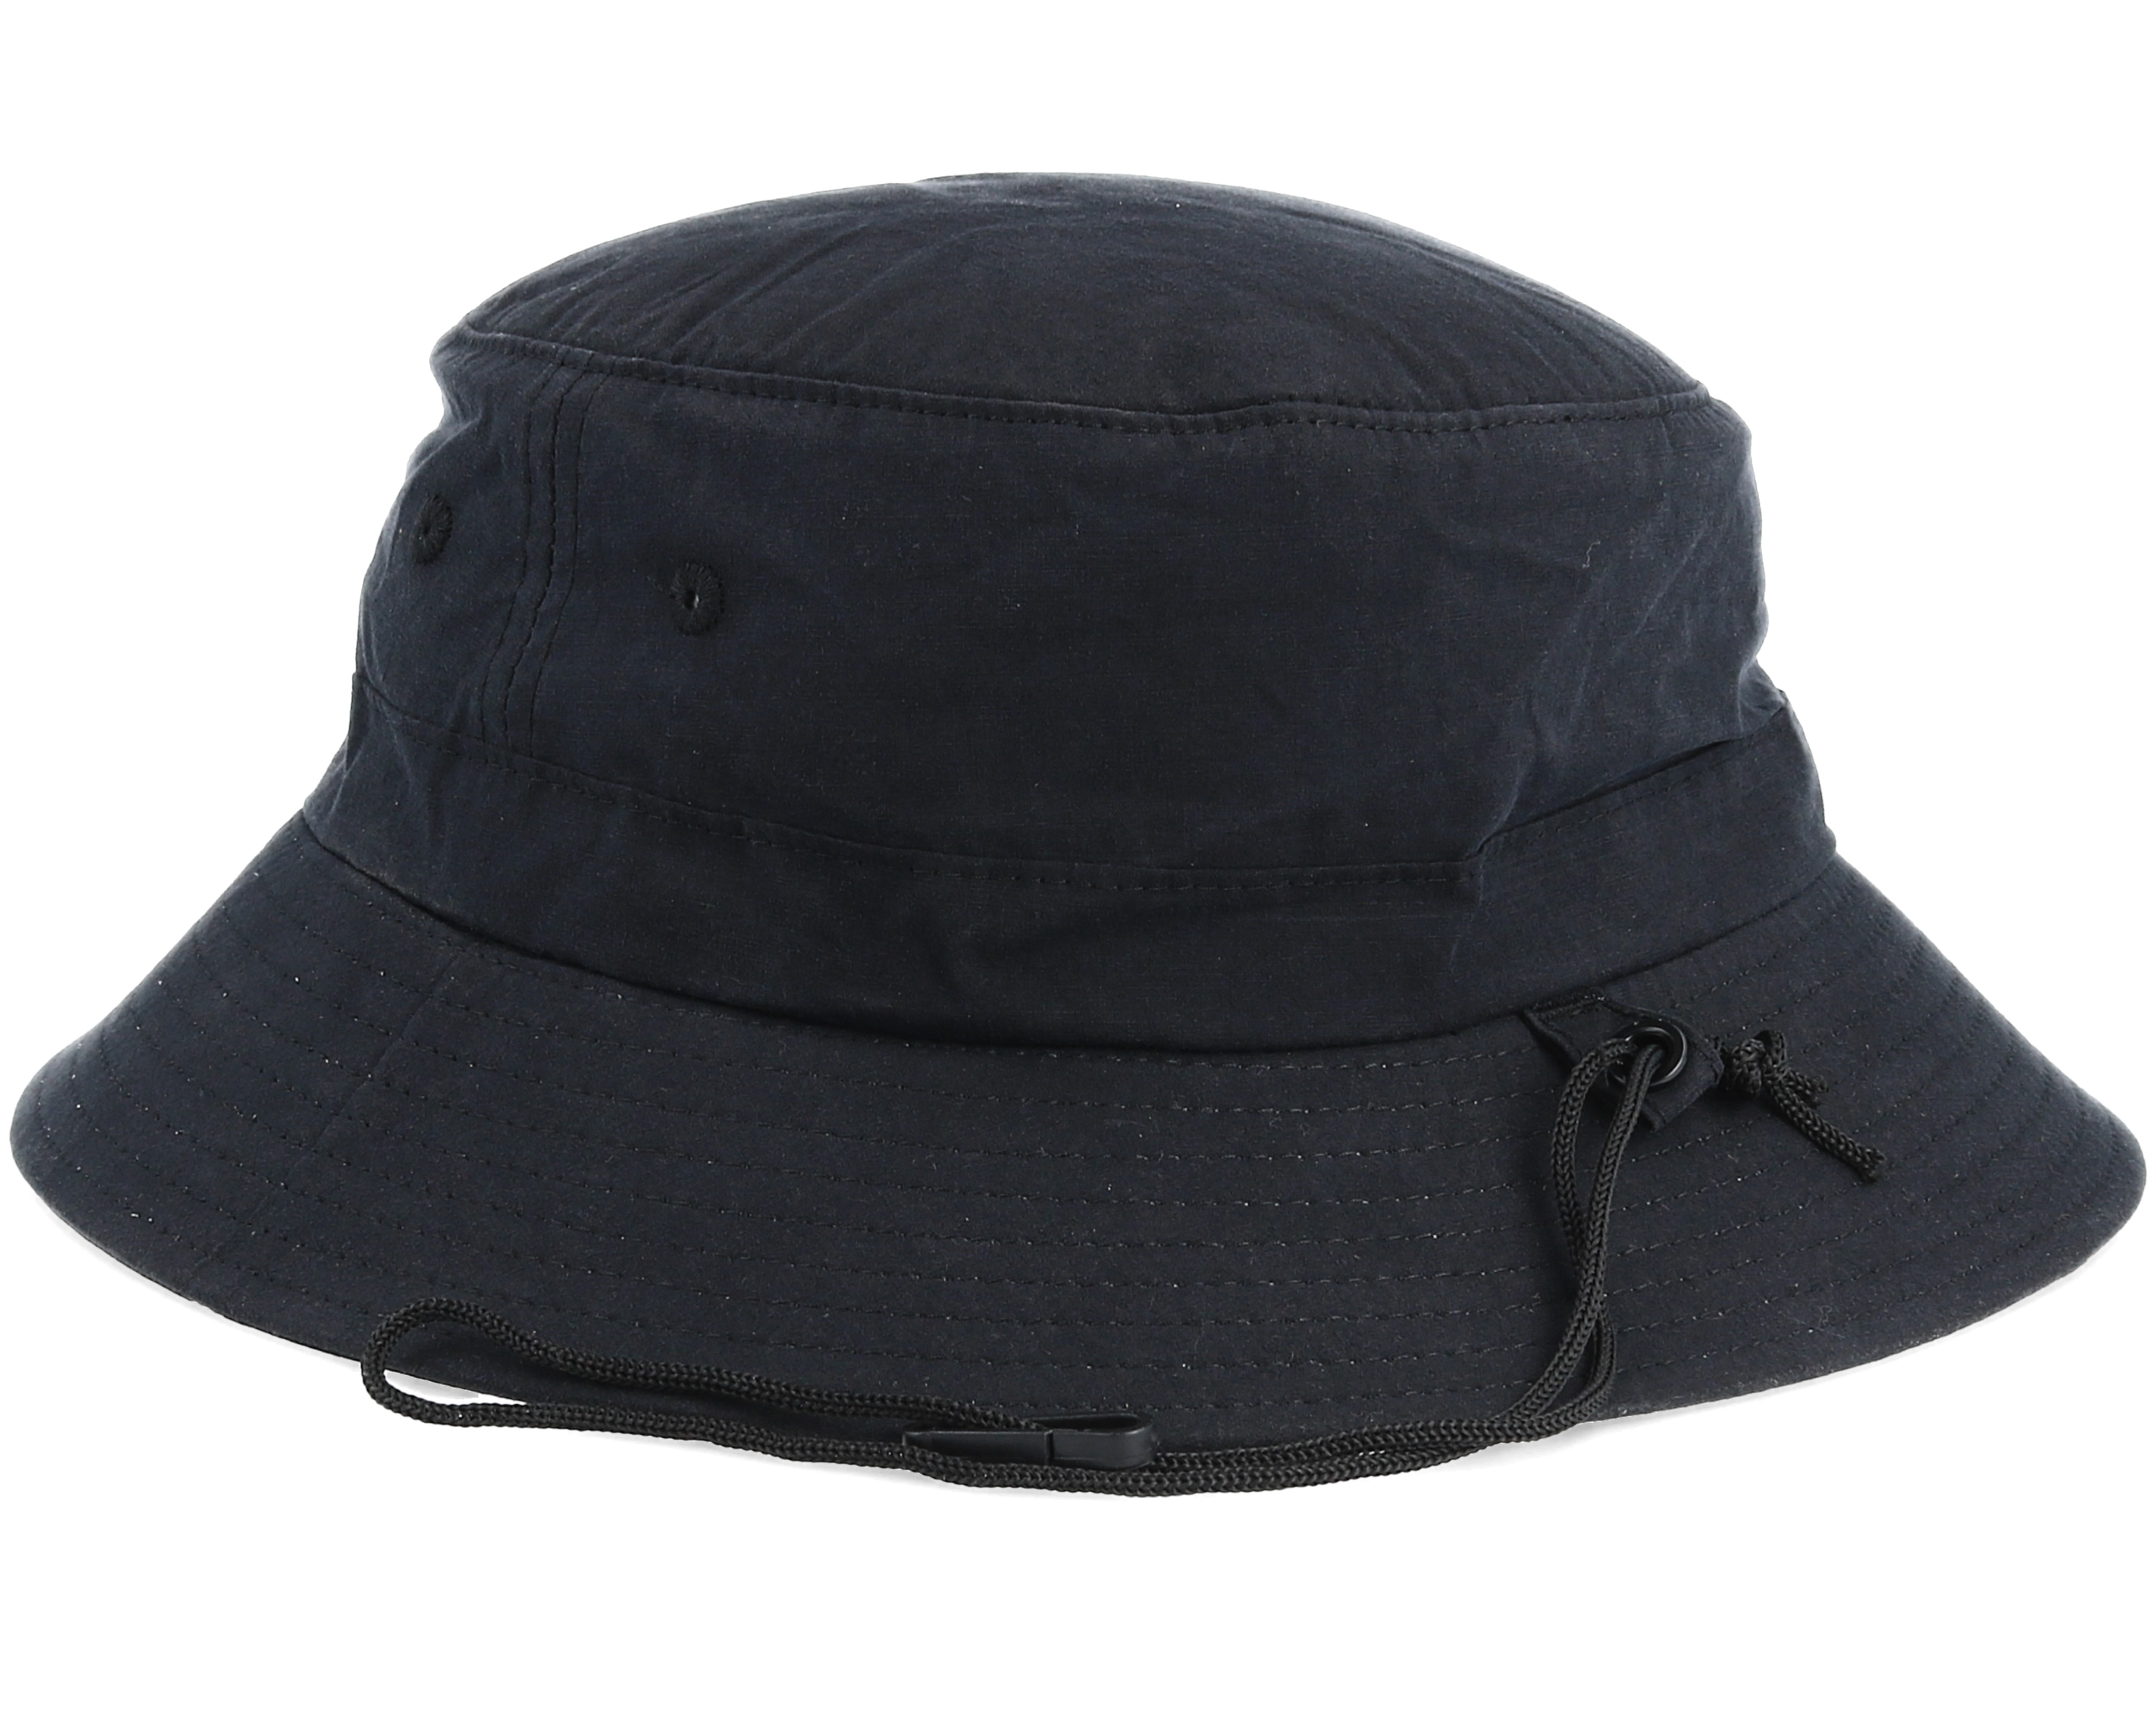 Wetty Surf Hat Black Bucket - Rip Curl hats | Hatstore.co.uk